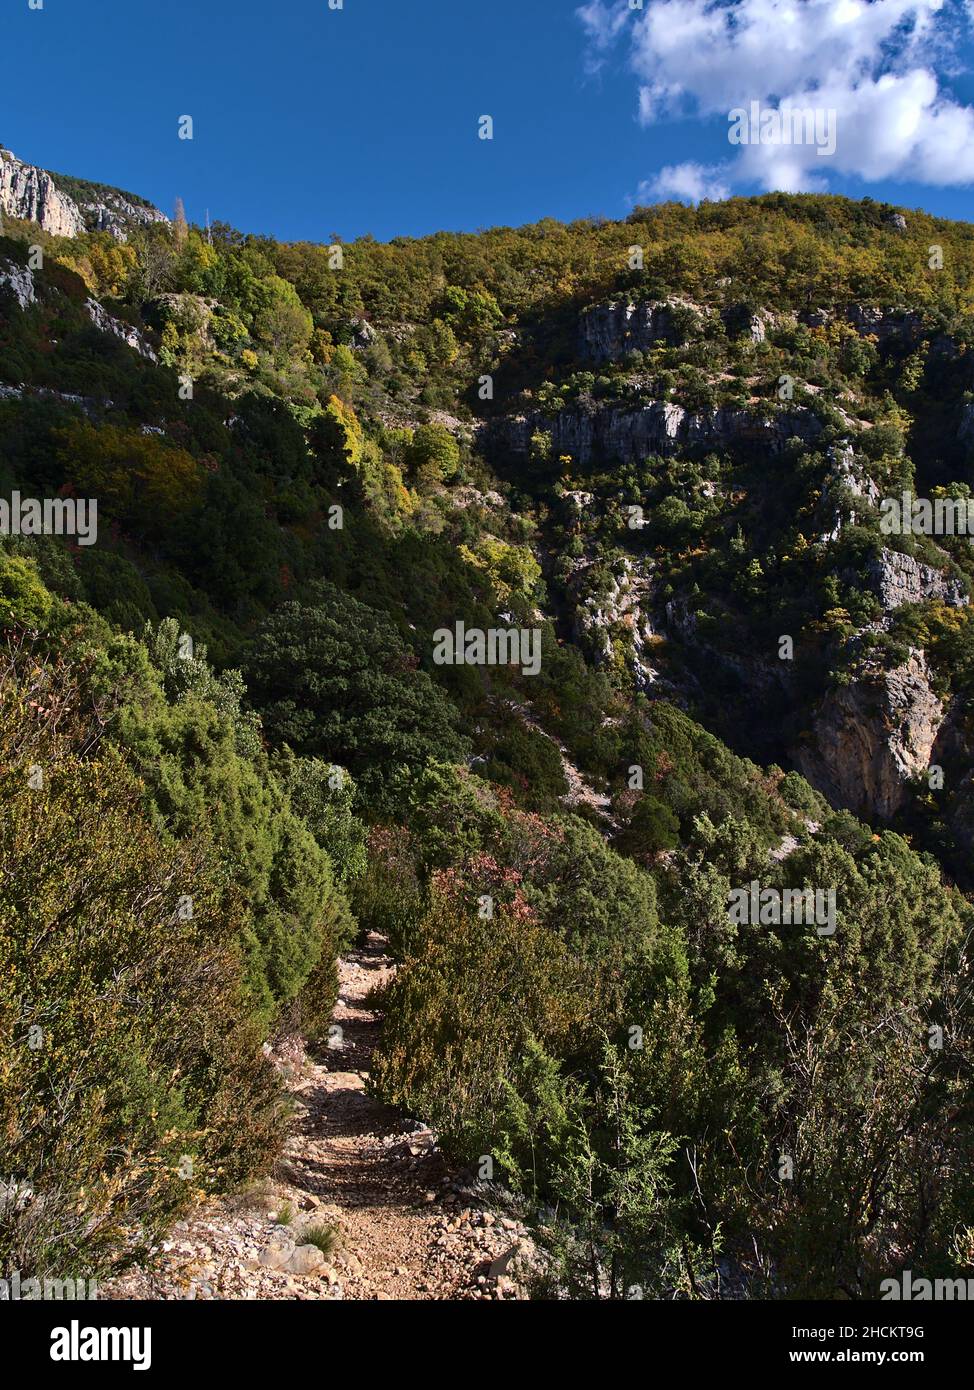 Sentier de randonnée étroit à la limite nord du majestueux canyon gorge du Verdon (Gorges du Verdon) dans le sud de la France en Provence. Banque D'Images